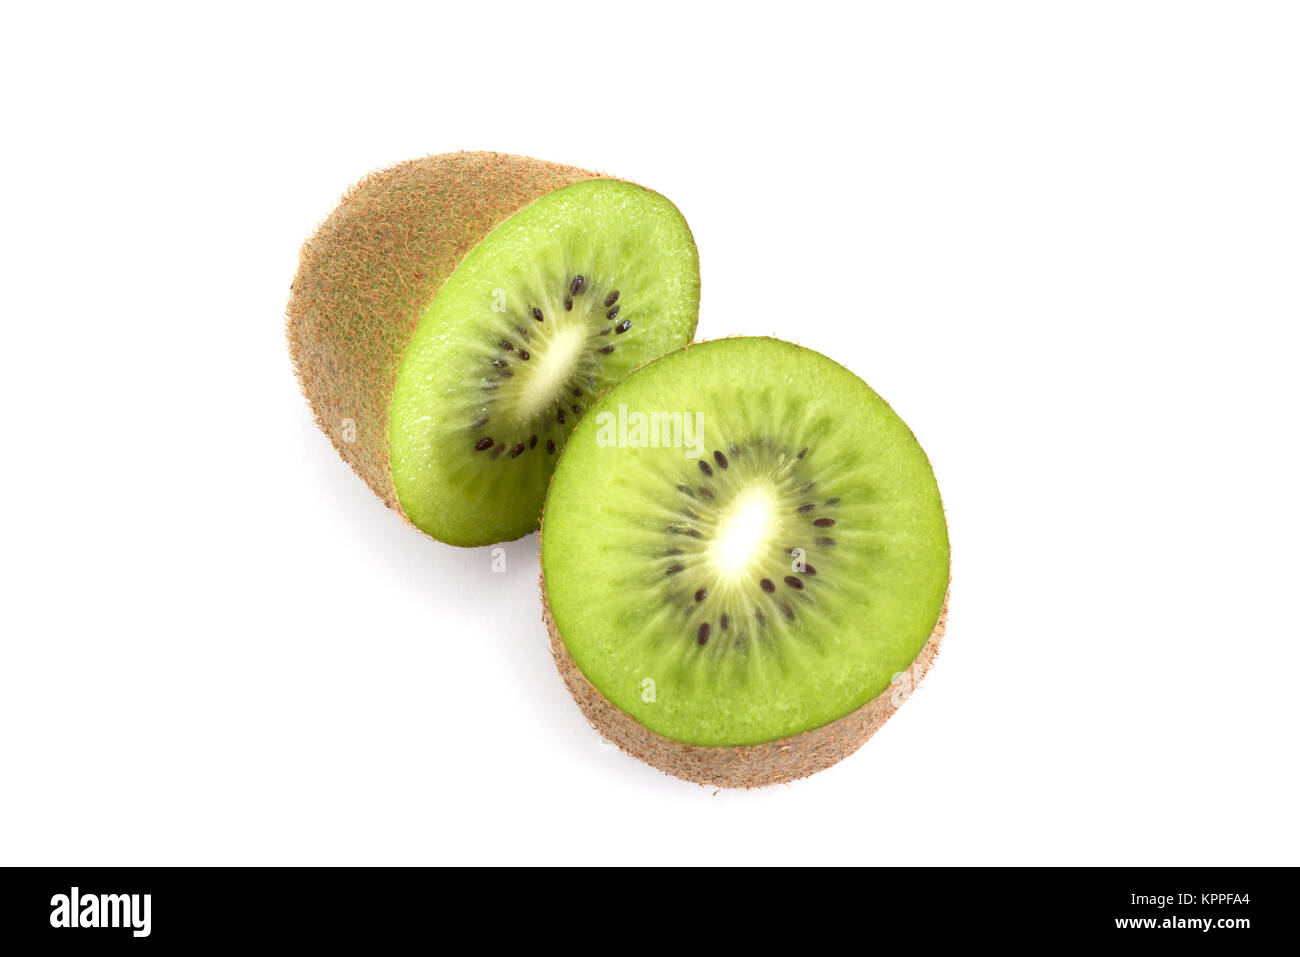 Single whole Kiwi fruit cut in half isolated on white background Stock Photo